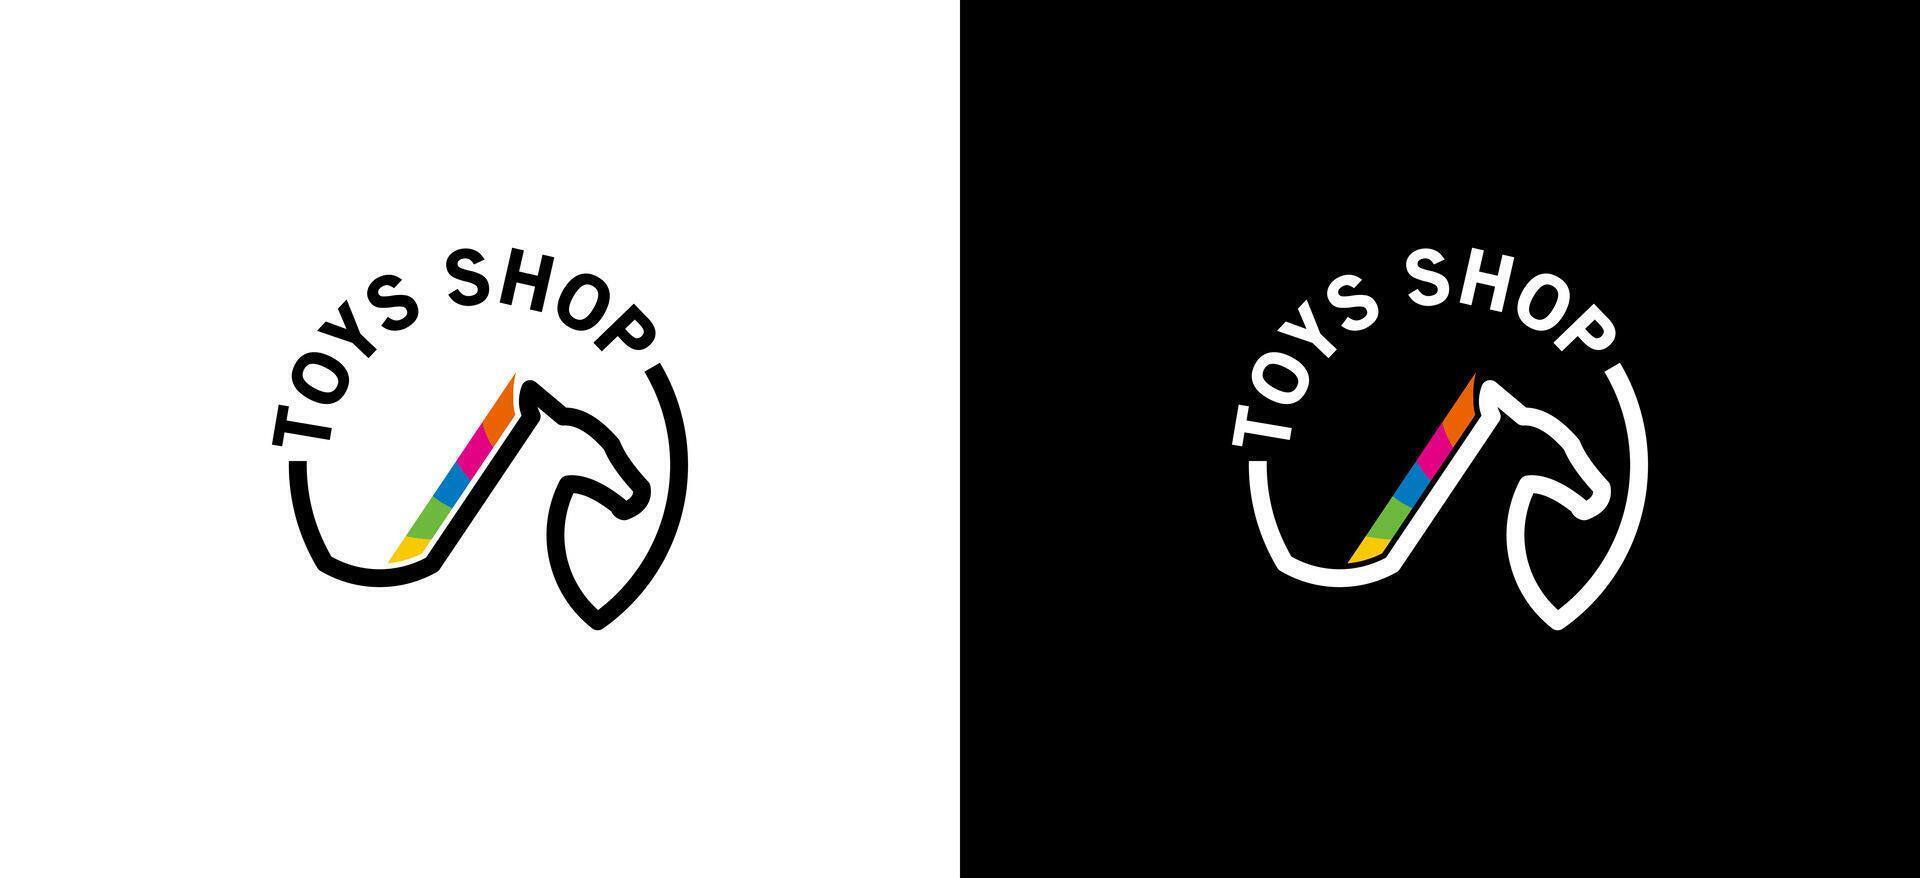 des gamins jouet magasin logo conception modèle avec cheval ligne symbole vecteur